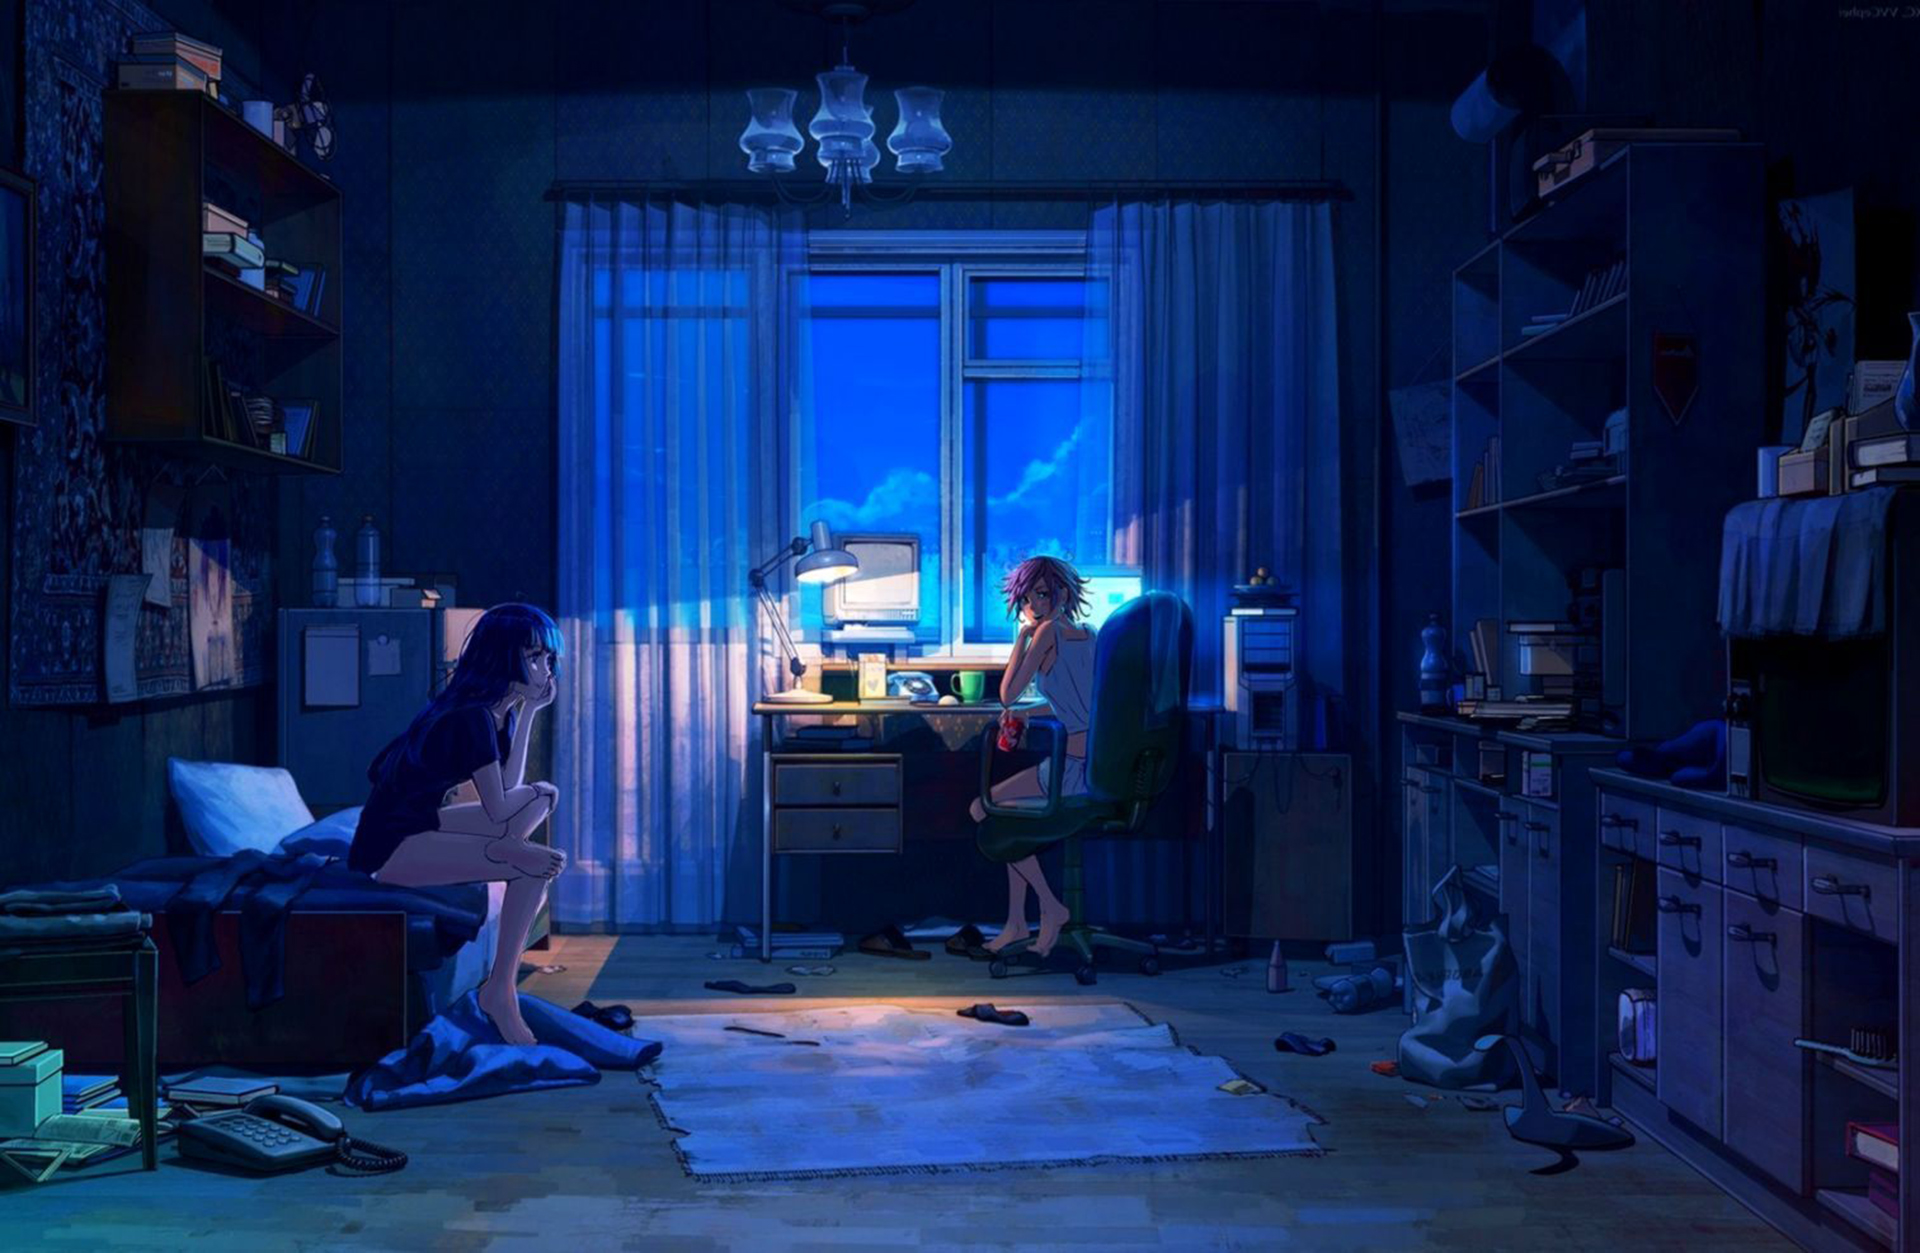 Anime Bedroom Desktop Wallpapers HD 